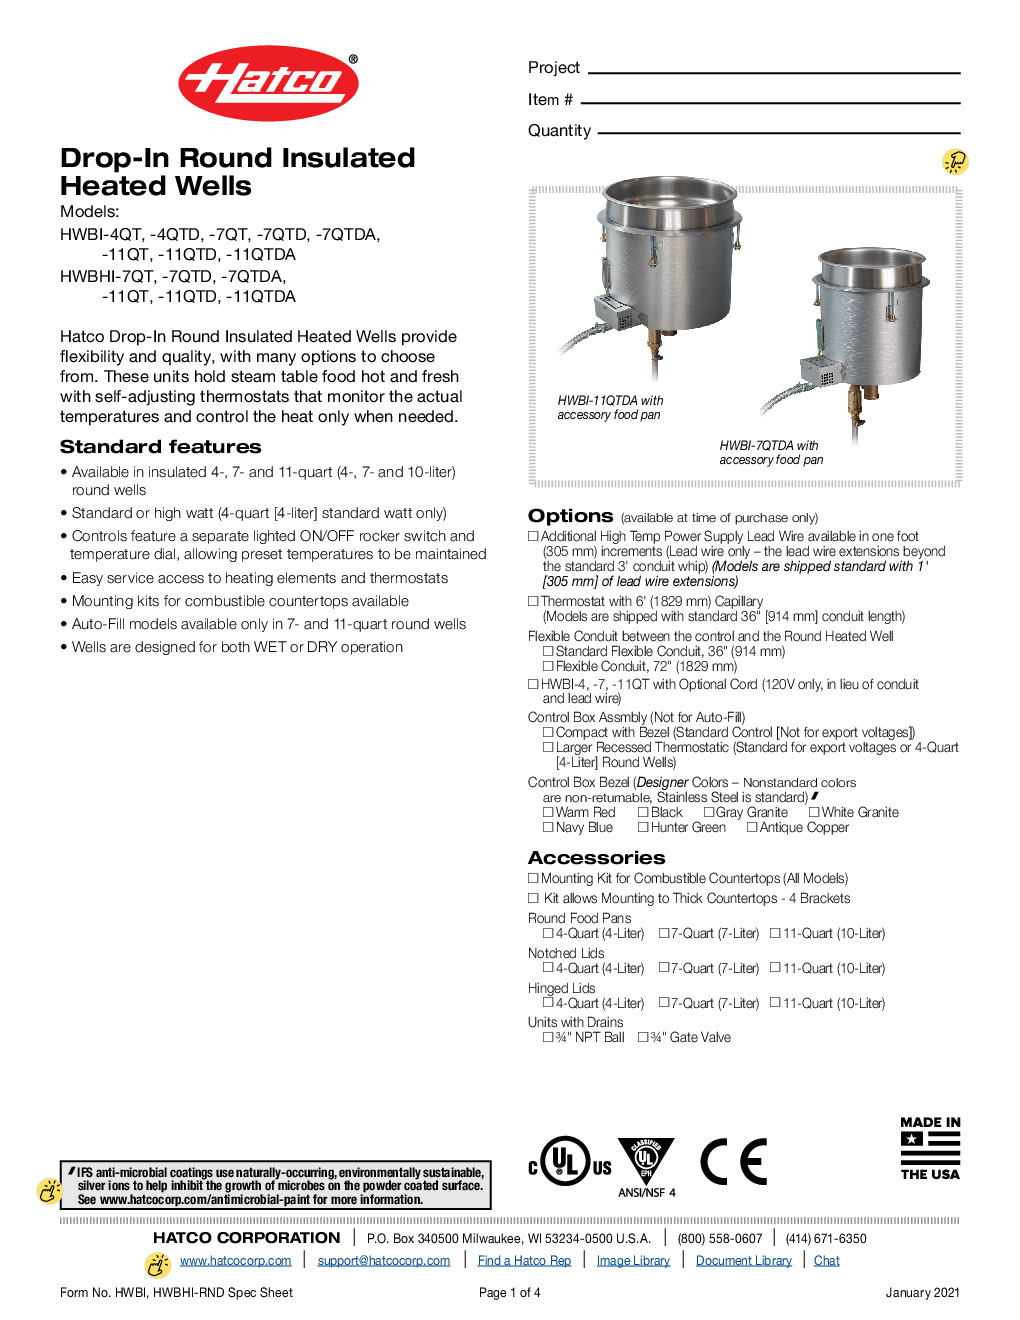 Hatco HWBI/H-7QTD/A Drop-In Round Insulated Heated Well